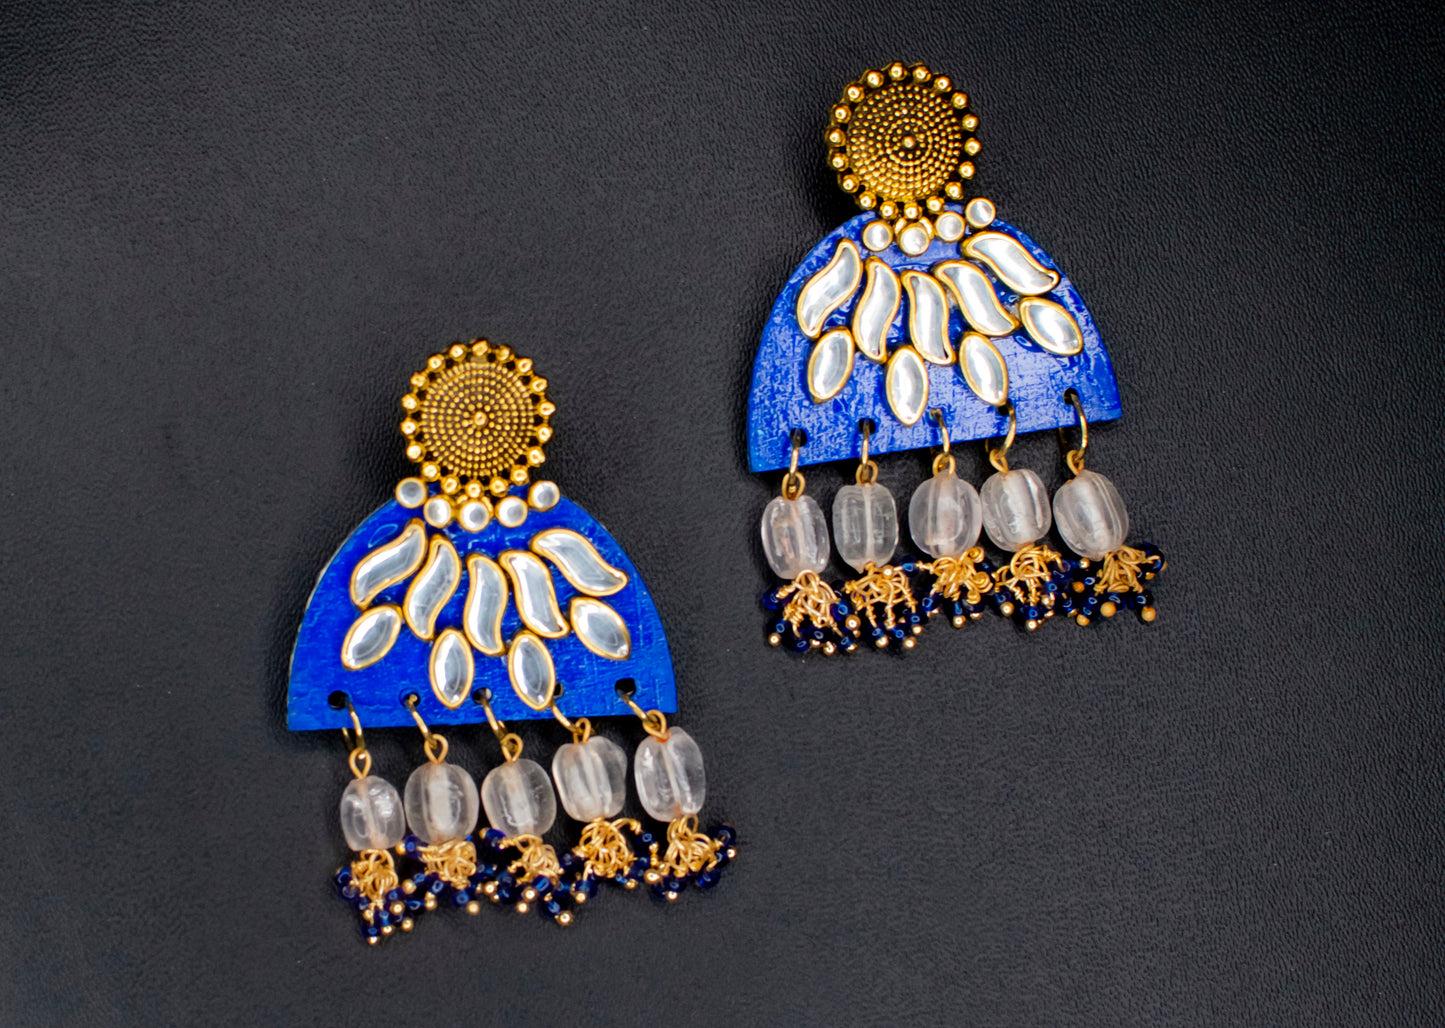 Terra Earrings, Handpainted : Handmade